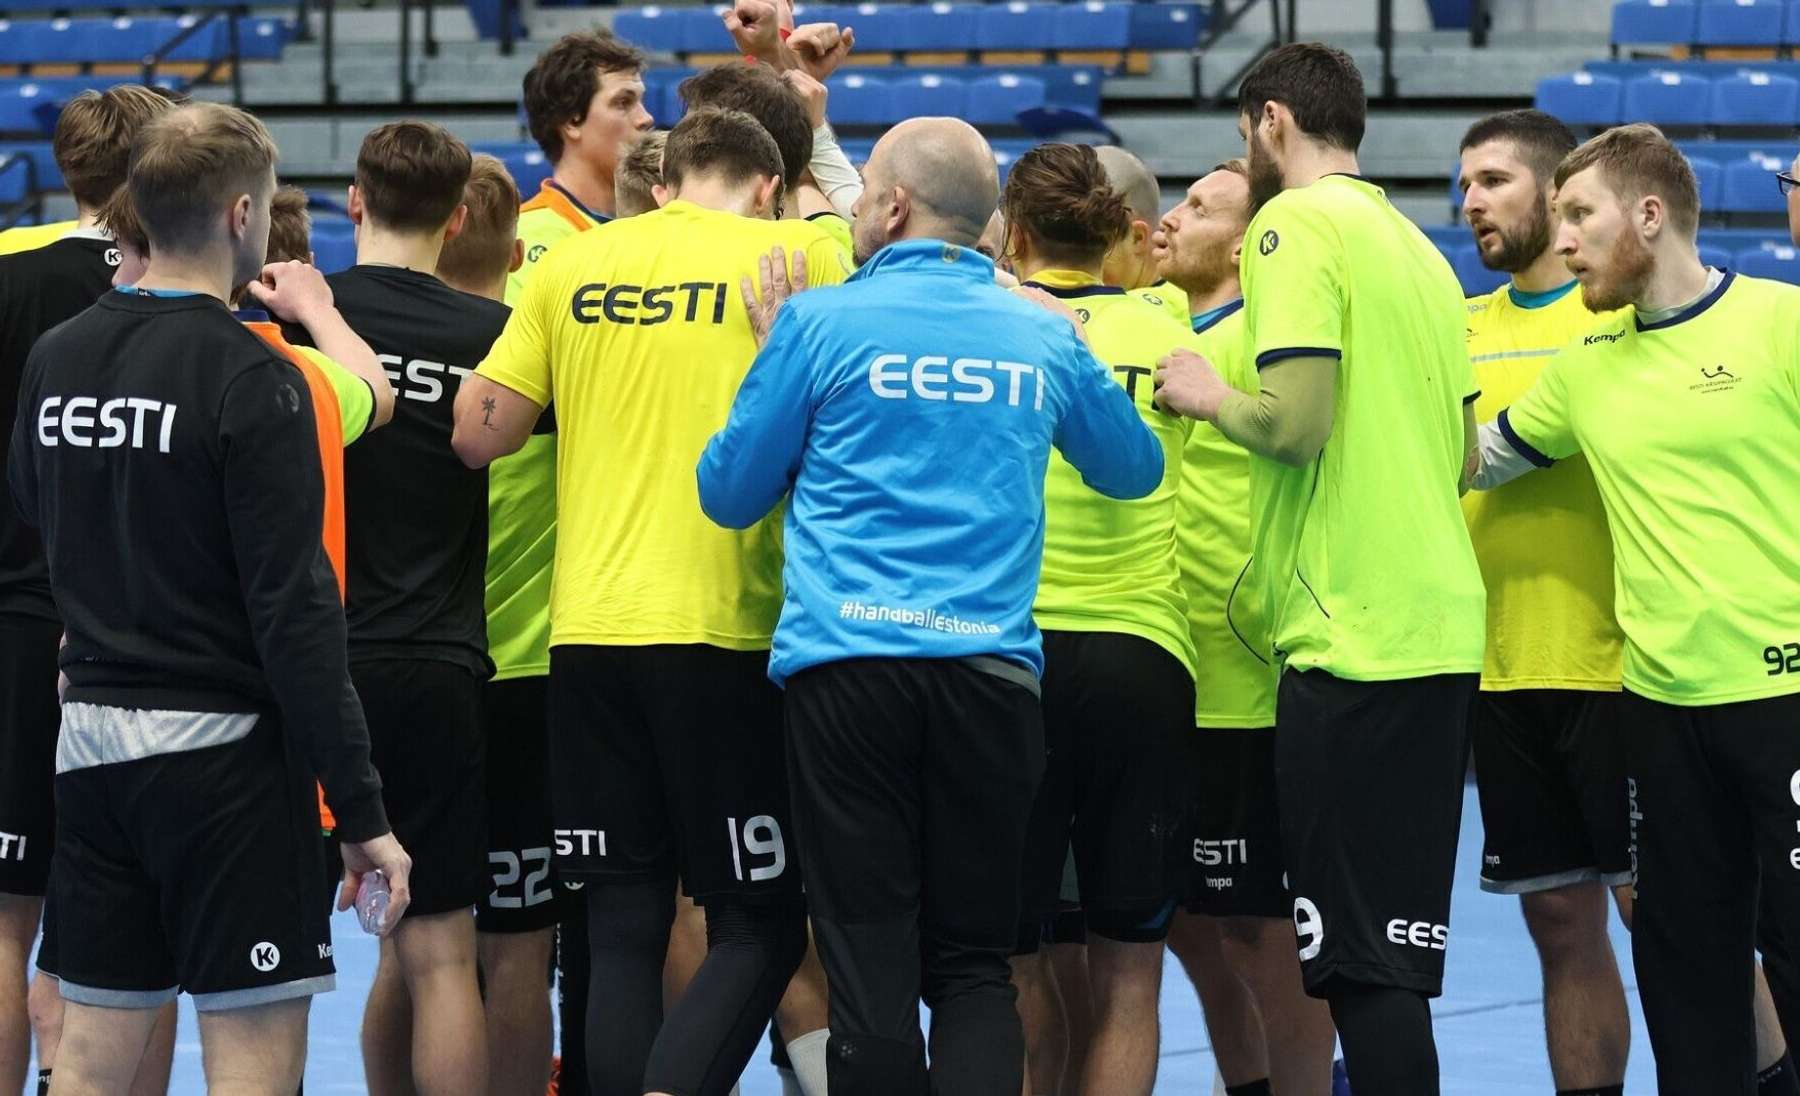 Eesti käsipallikoondis